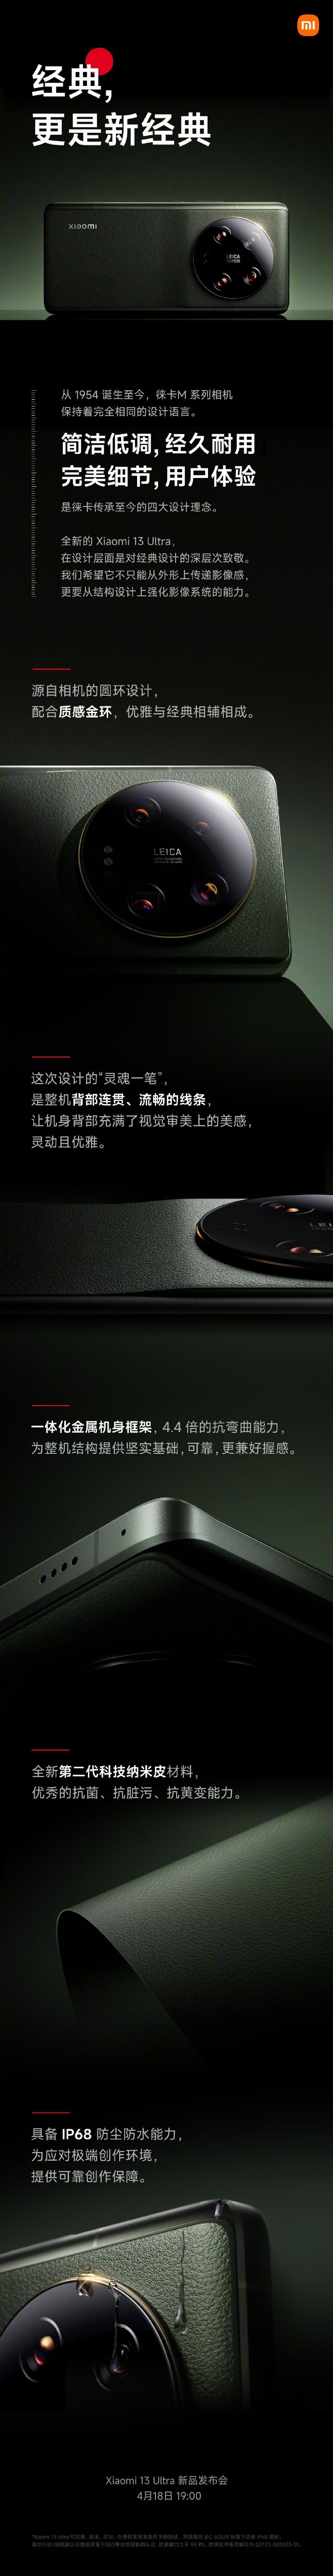 小米13 Ultra外观正式公布 传承徕卡相机设计